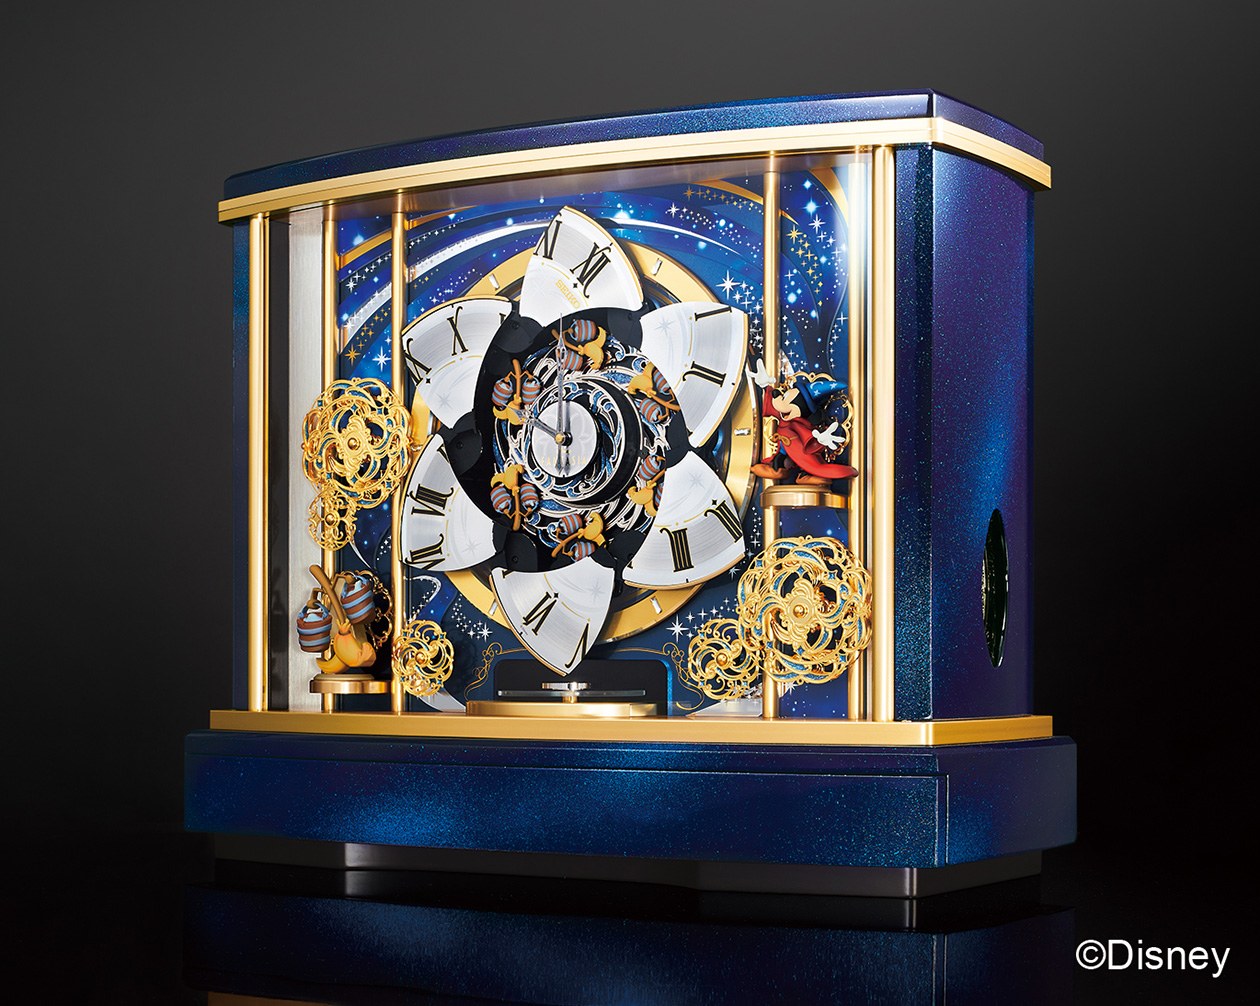 ディズニー映画『ファンタジア』のからくり時計が創立100周年を記念して登場。5台限定、お値段は1100万円 | ニコニコニュース